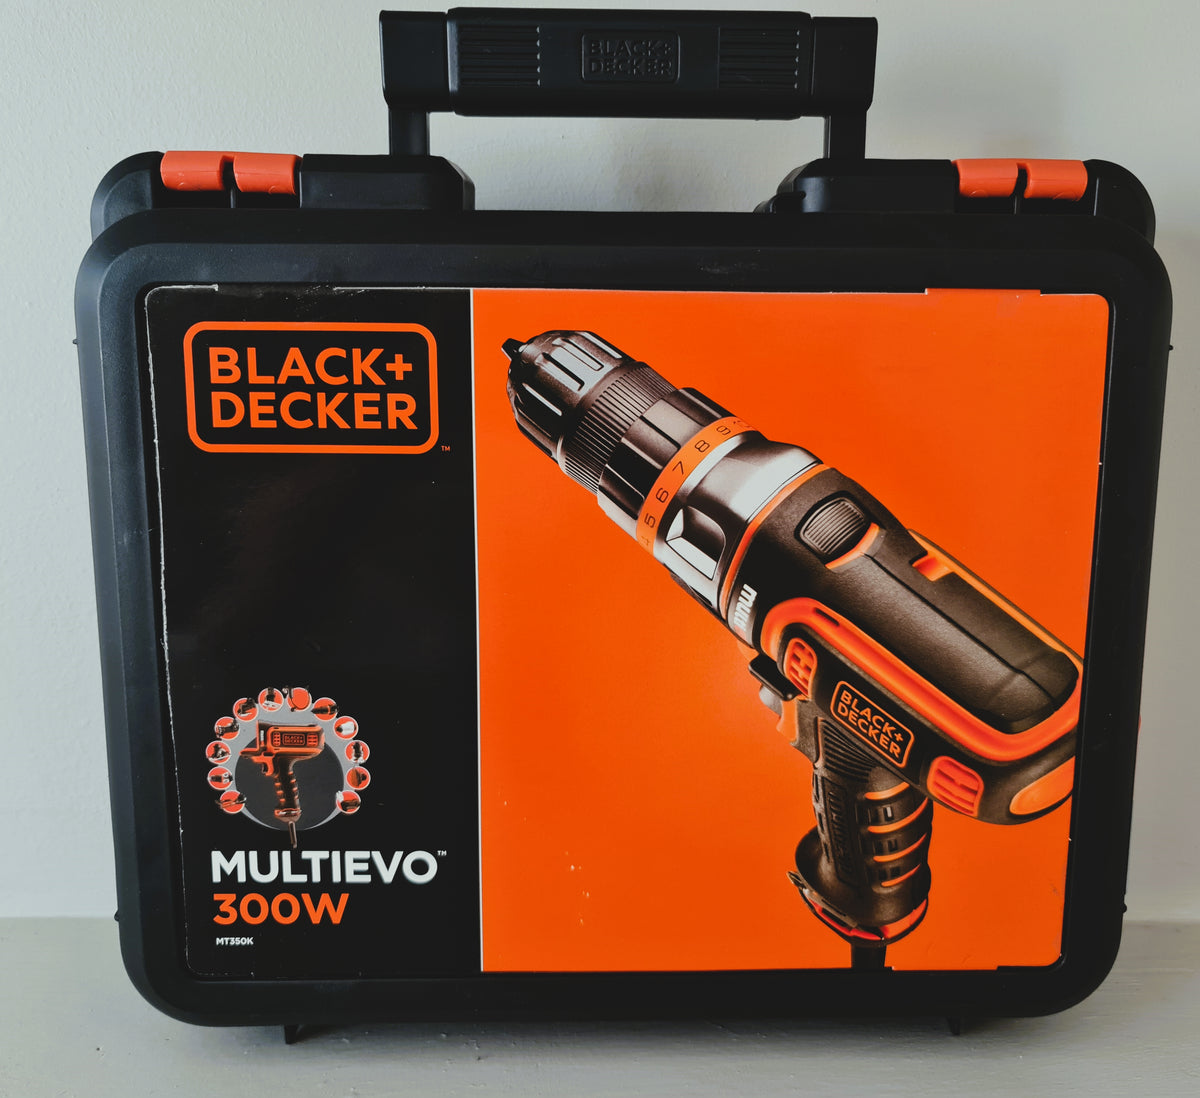 Black + Decker Mt218kb-qw-18v Multievo Screwdriver Drill, With